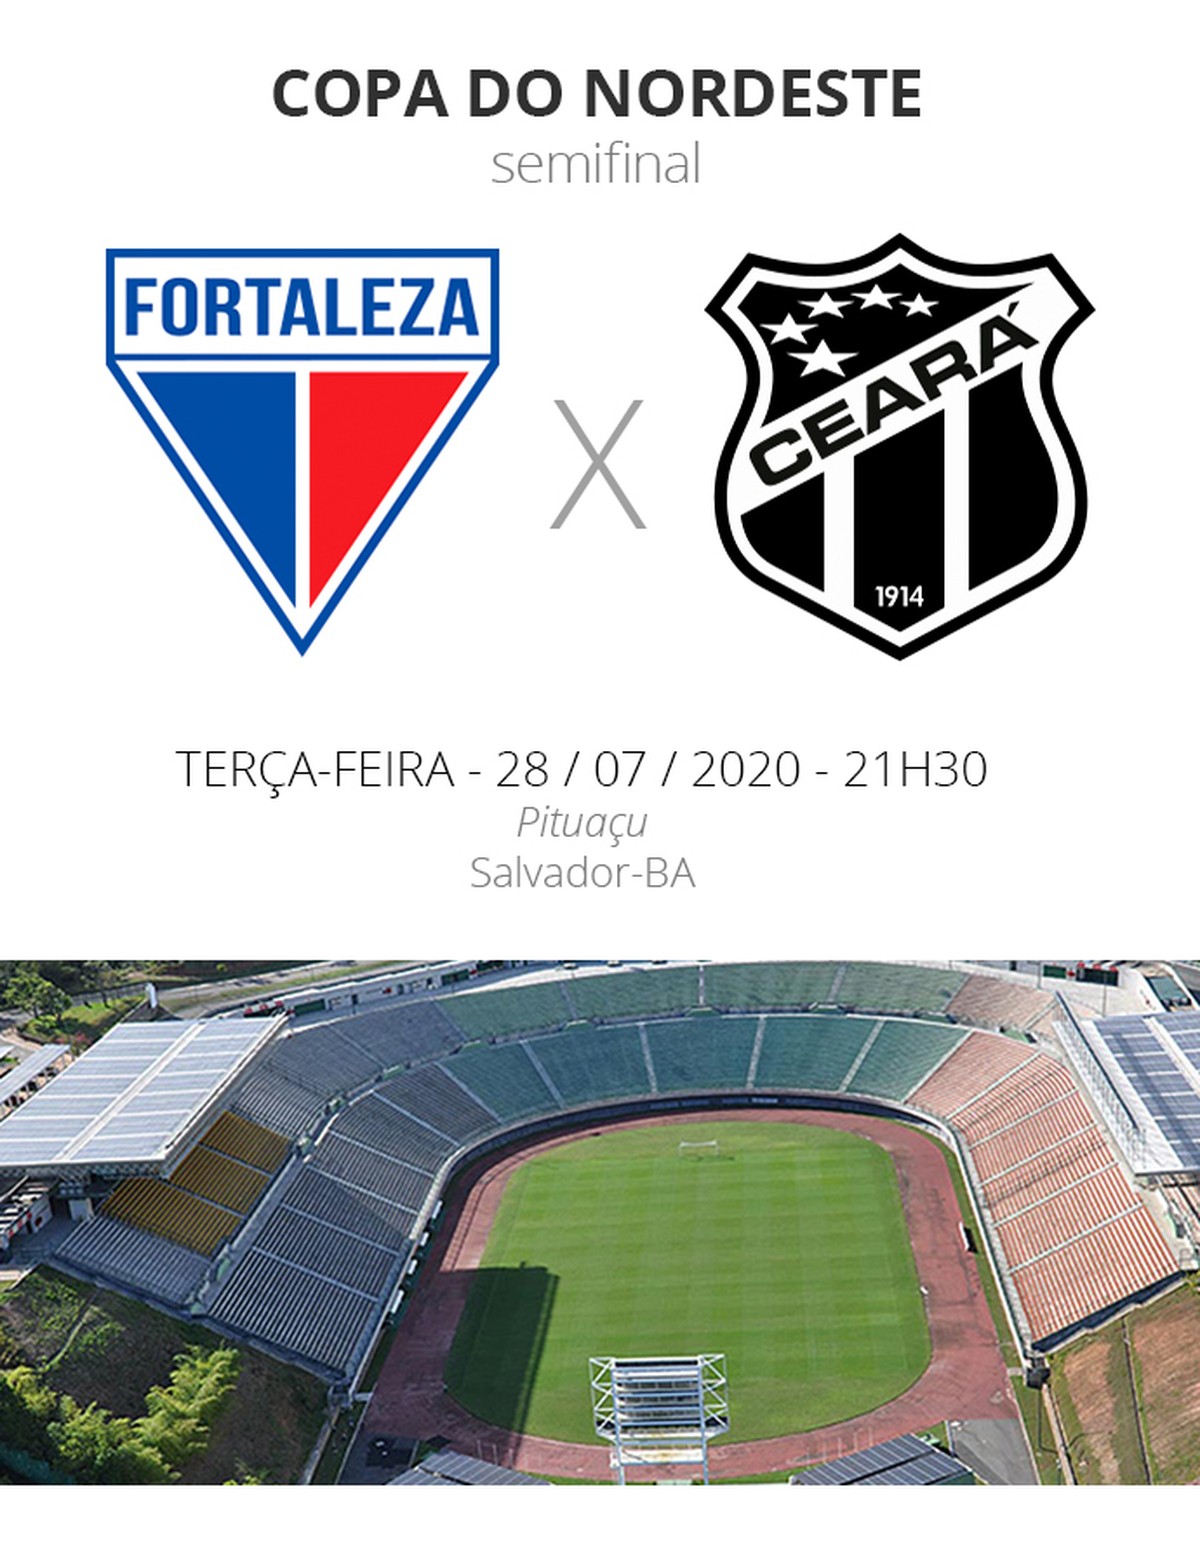 Entenda objetivos do Forte Futebol, grupo com Ceará e Fortaleza